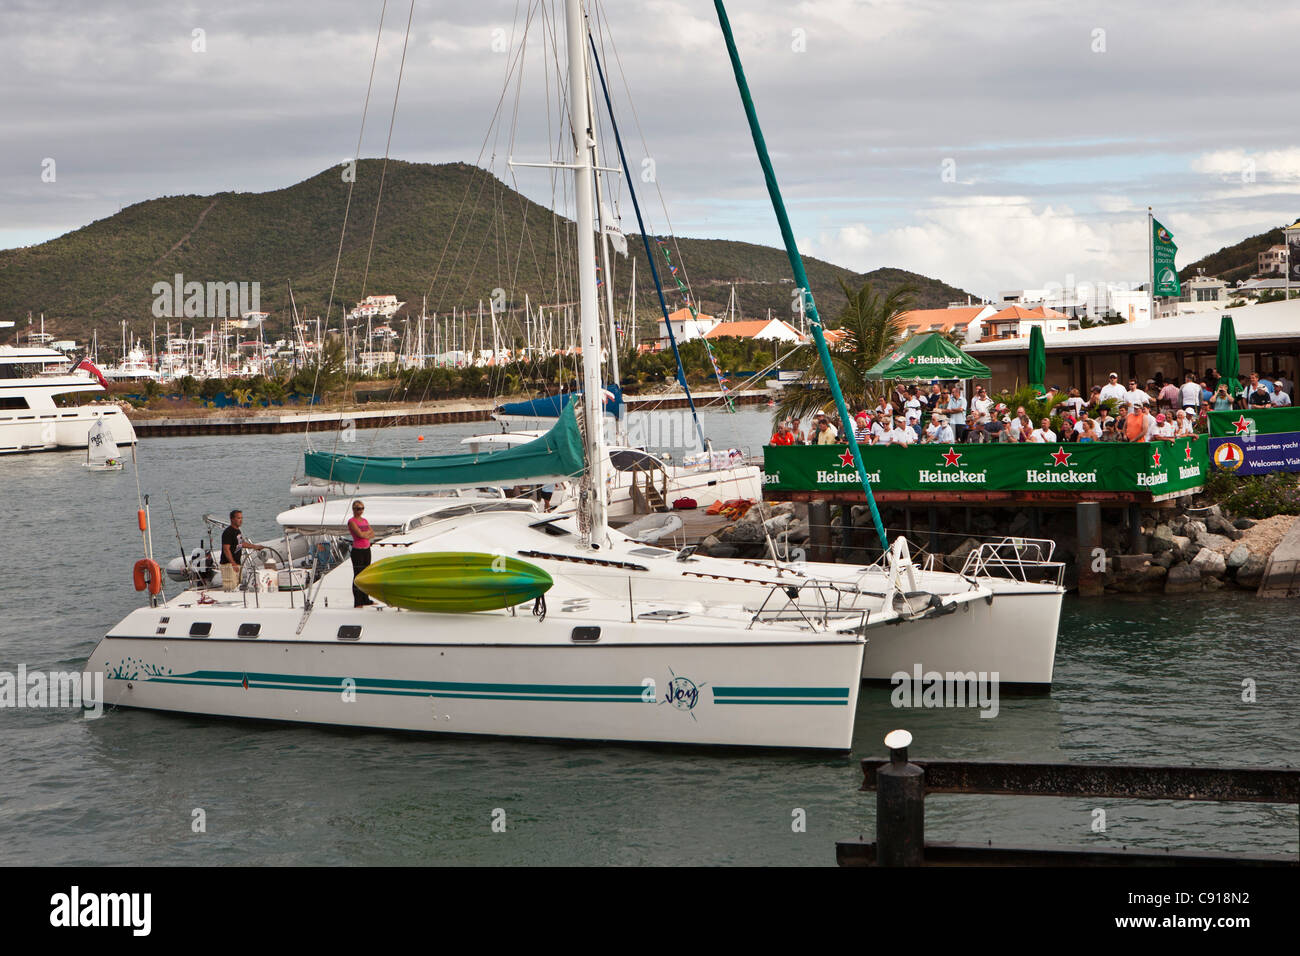 Isola dei Caraibi, indipendente dai Paesi Bassi a partire dal 2010. Simpson Bay e sulla laguna. Yacht durante la Heineken regata. Foto Stock